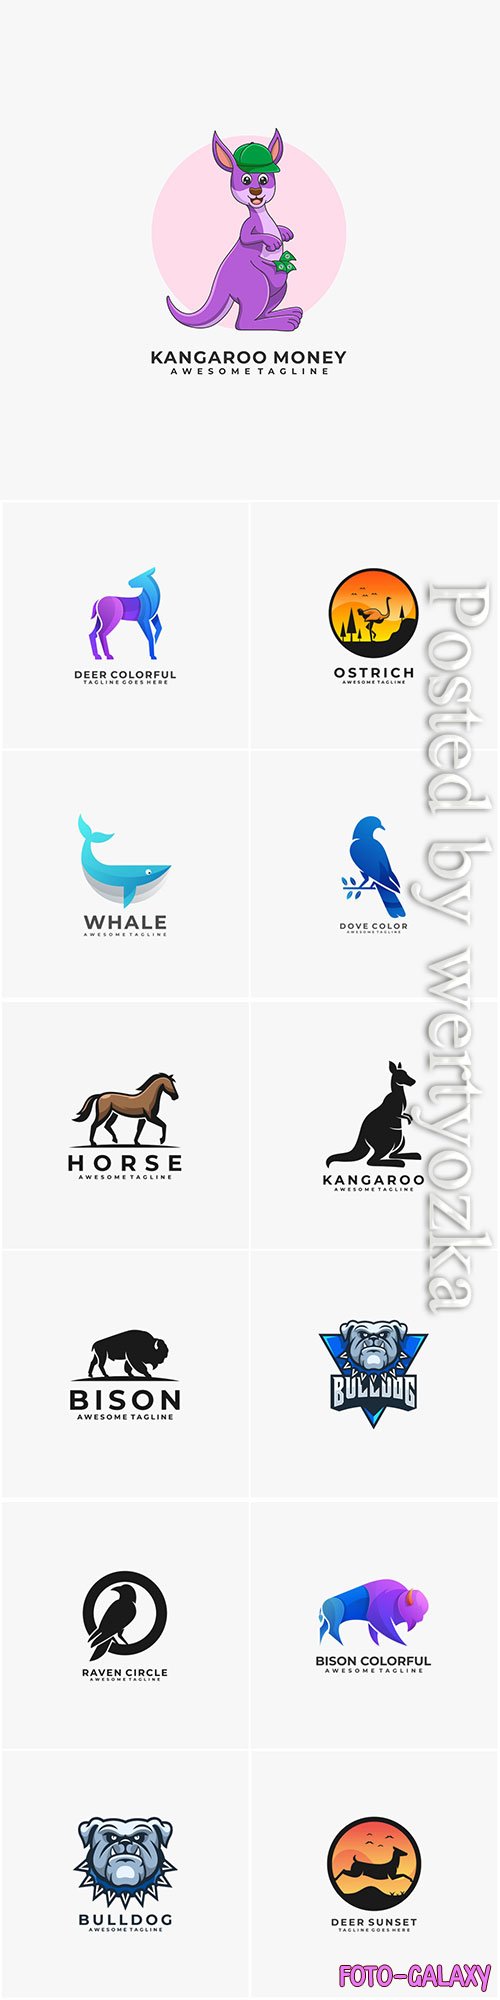 Animals and birds logos in vector vol 2